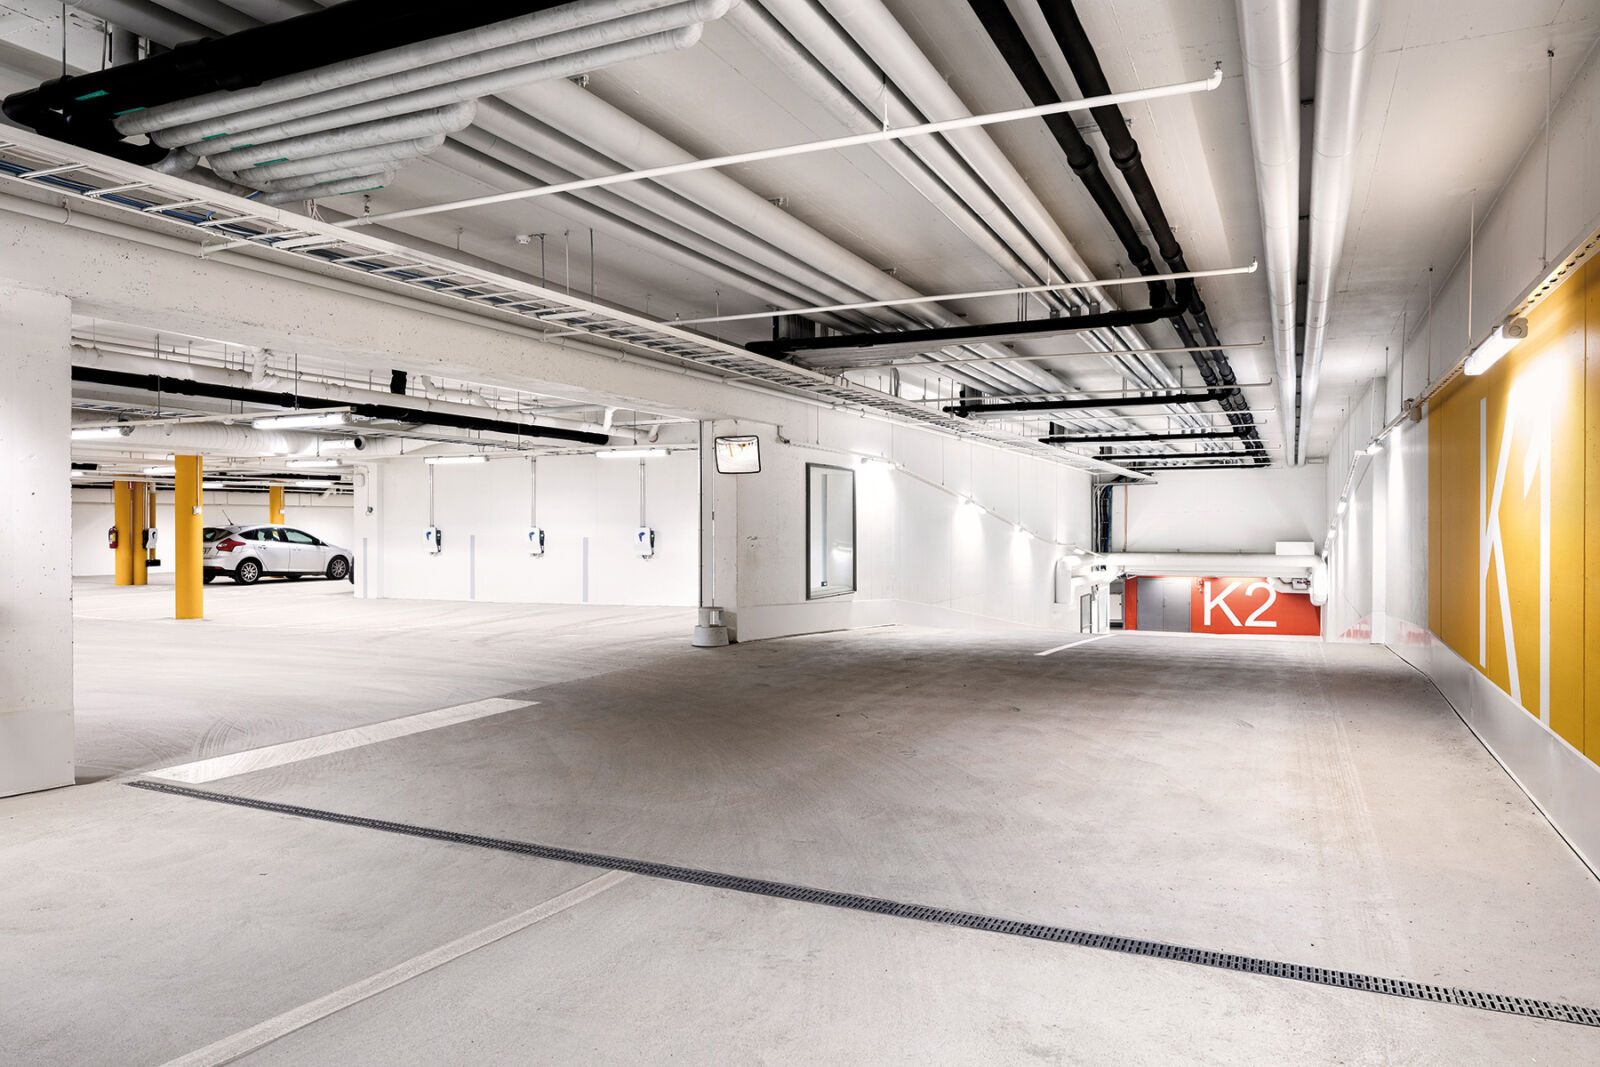 Autohalleissa on reilusti autopaikkoja ja sähköautojen latauspisteitä asukkaiden käyttöön.